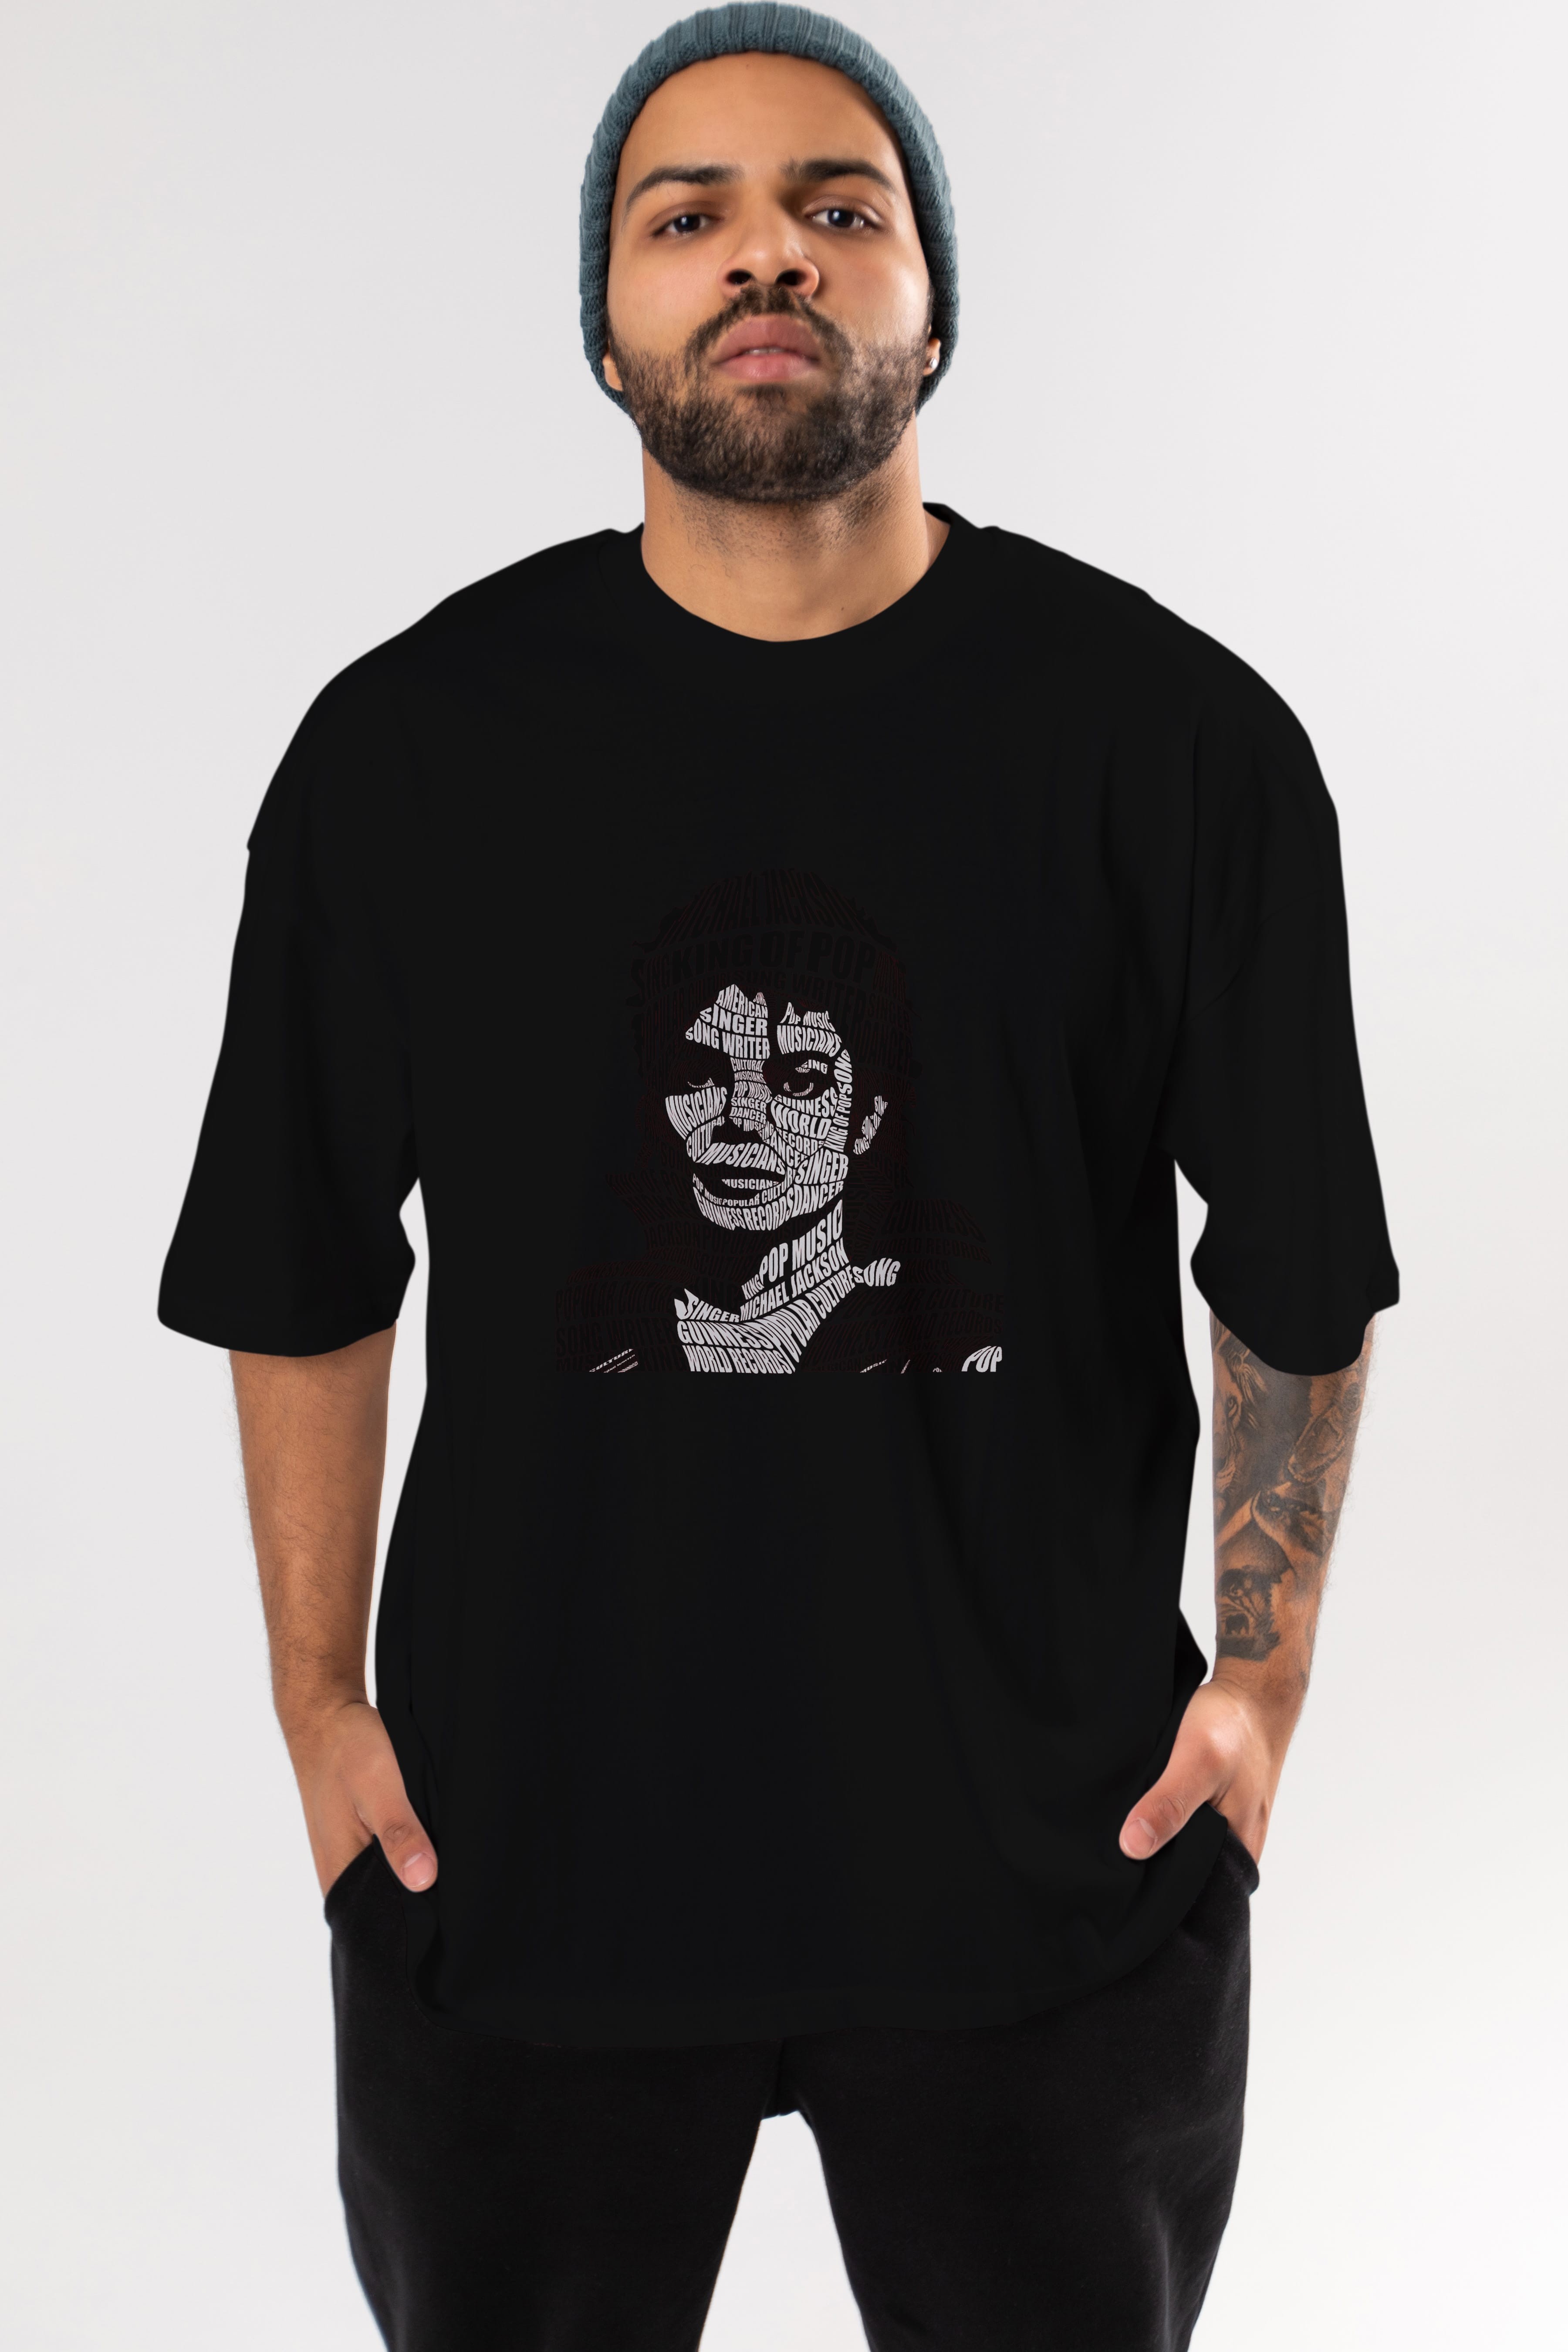 Michael Jackson Calligram Ön Baskılı Oversize t-shirt %100 pamuk Erkek Kadın Unisex